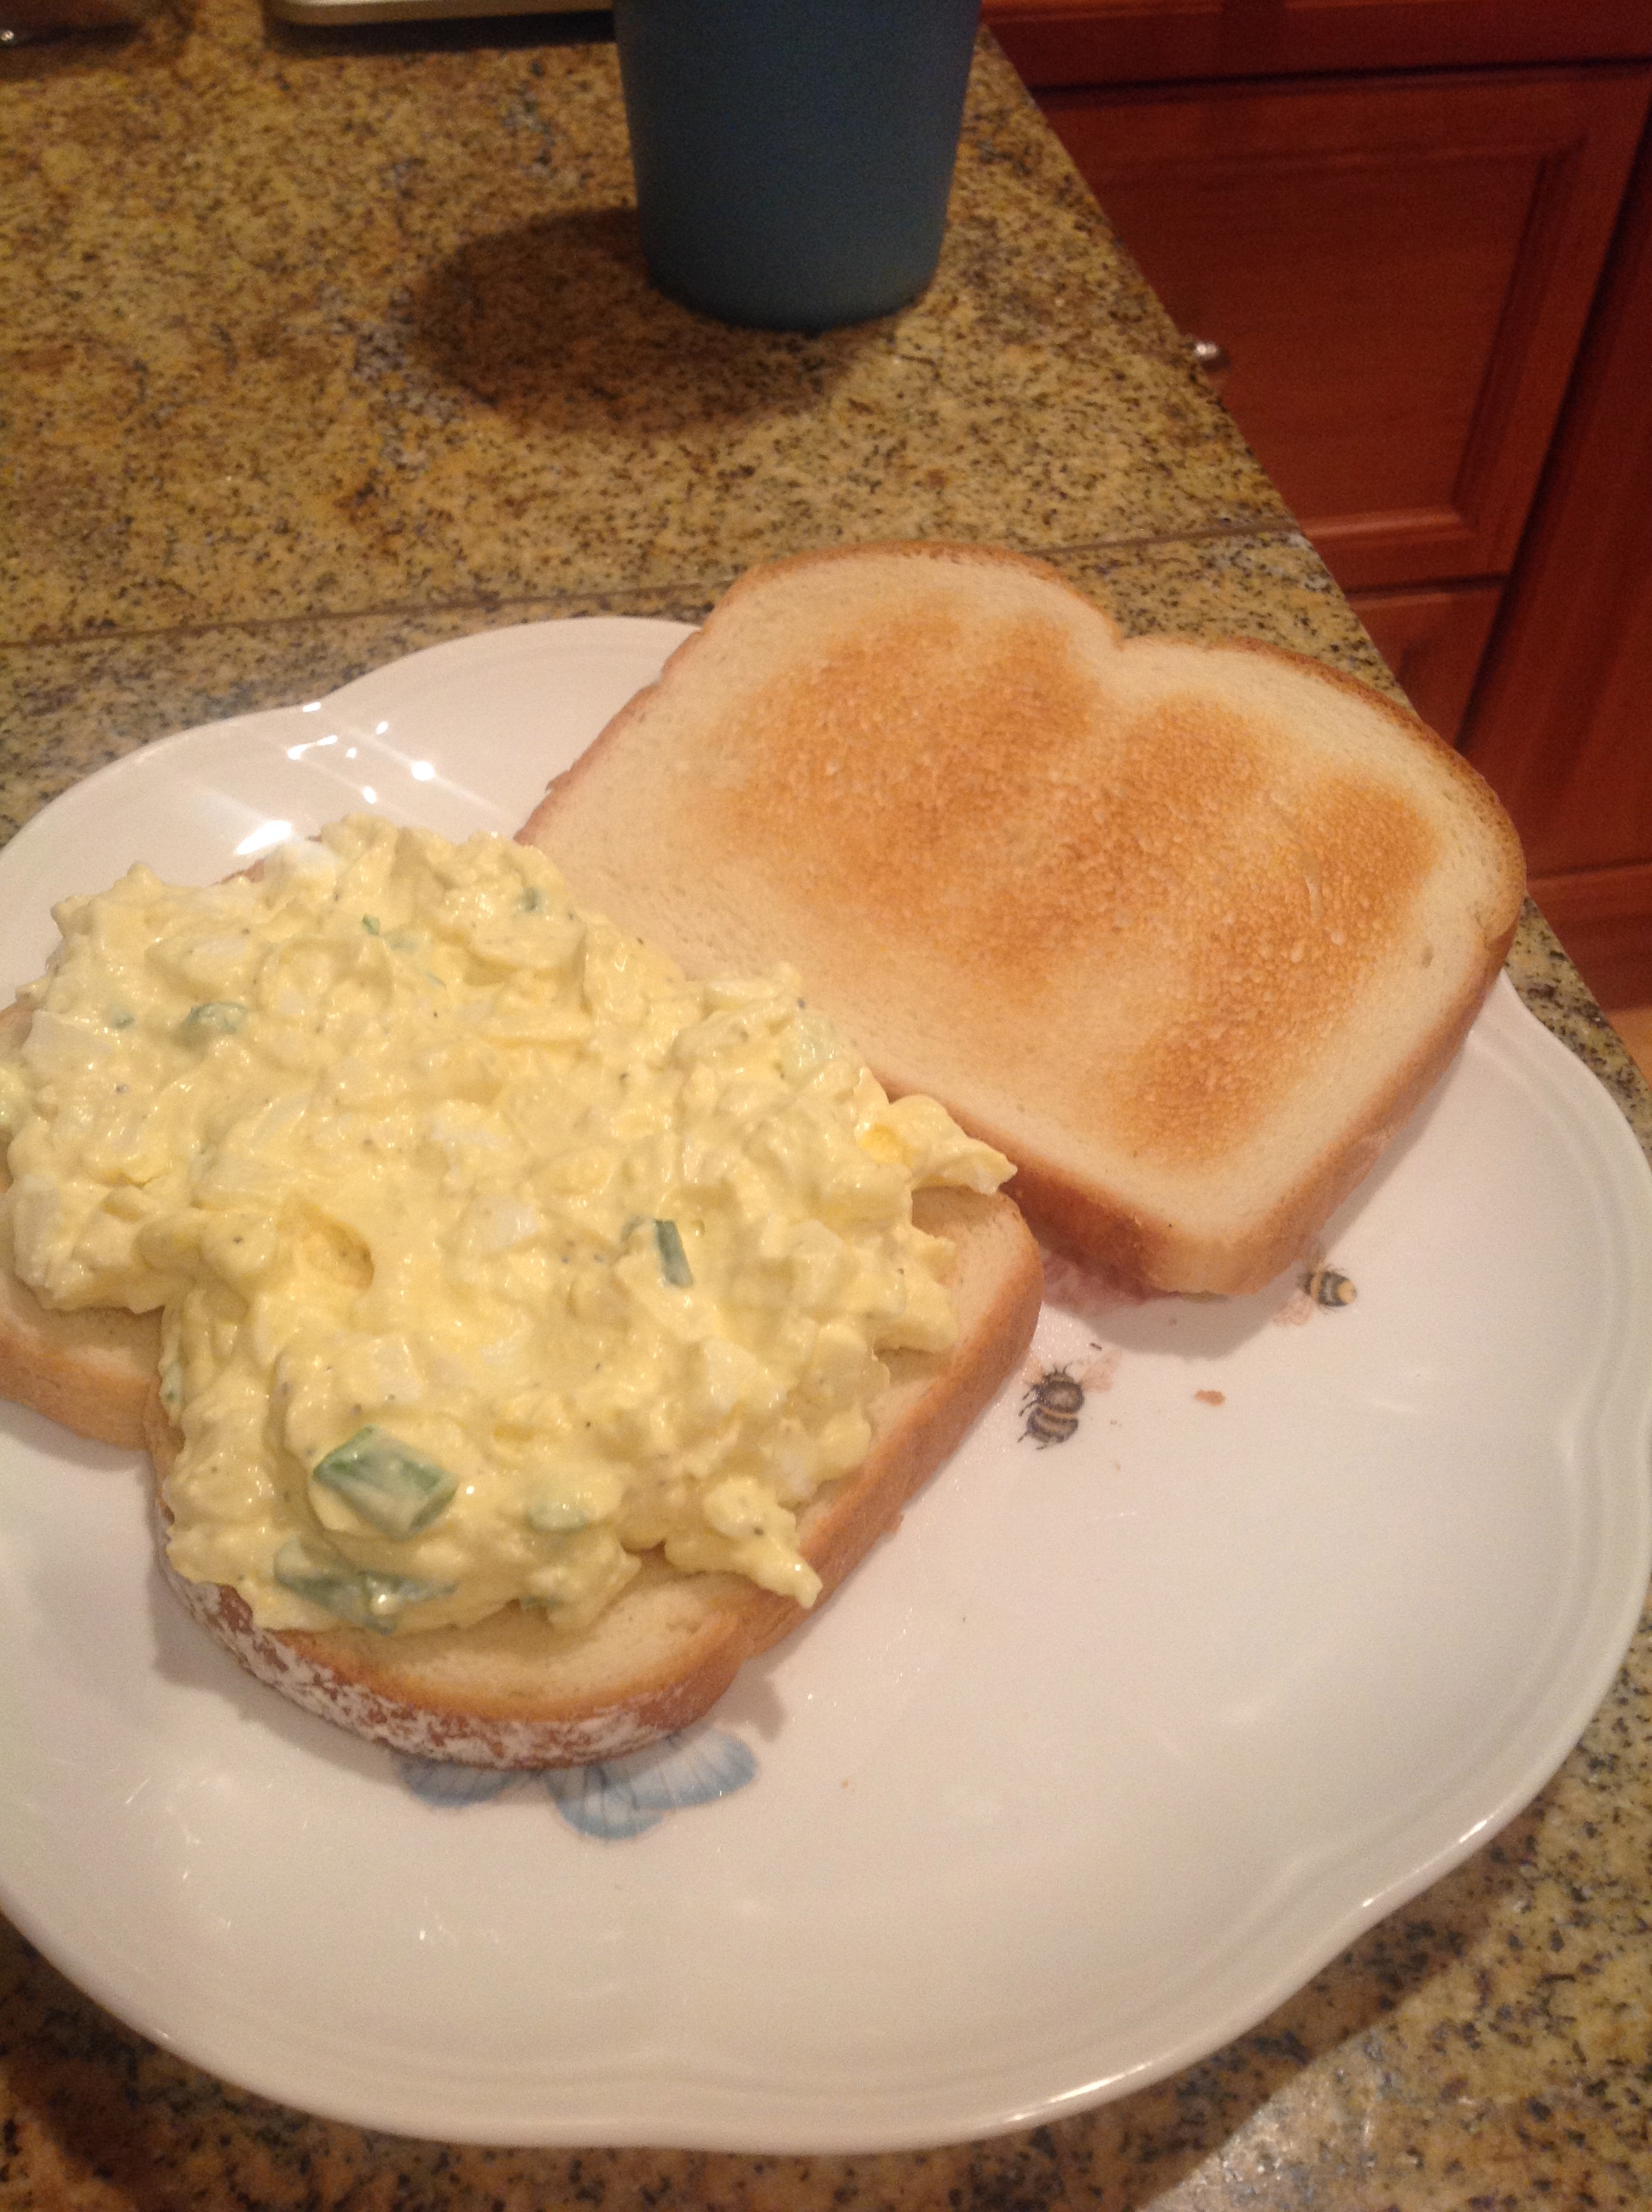 zach made egg salad sandwich